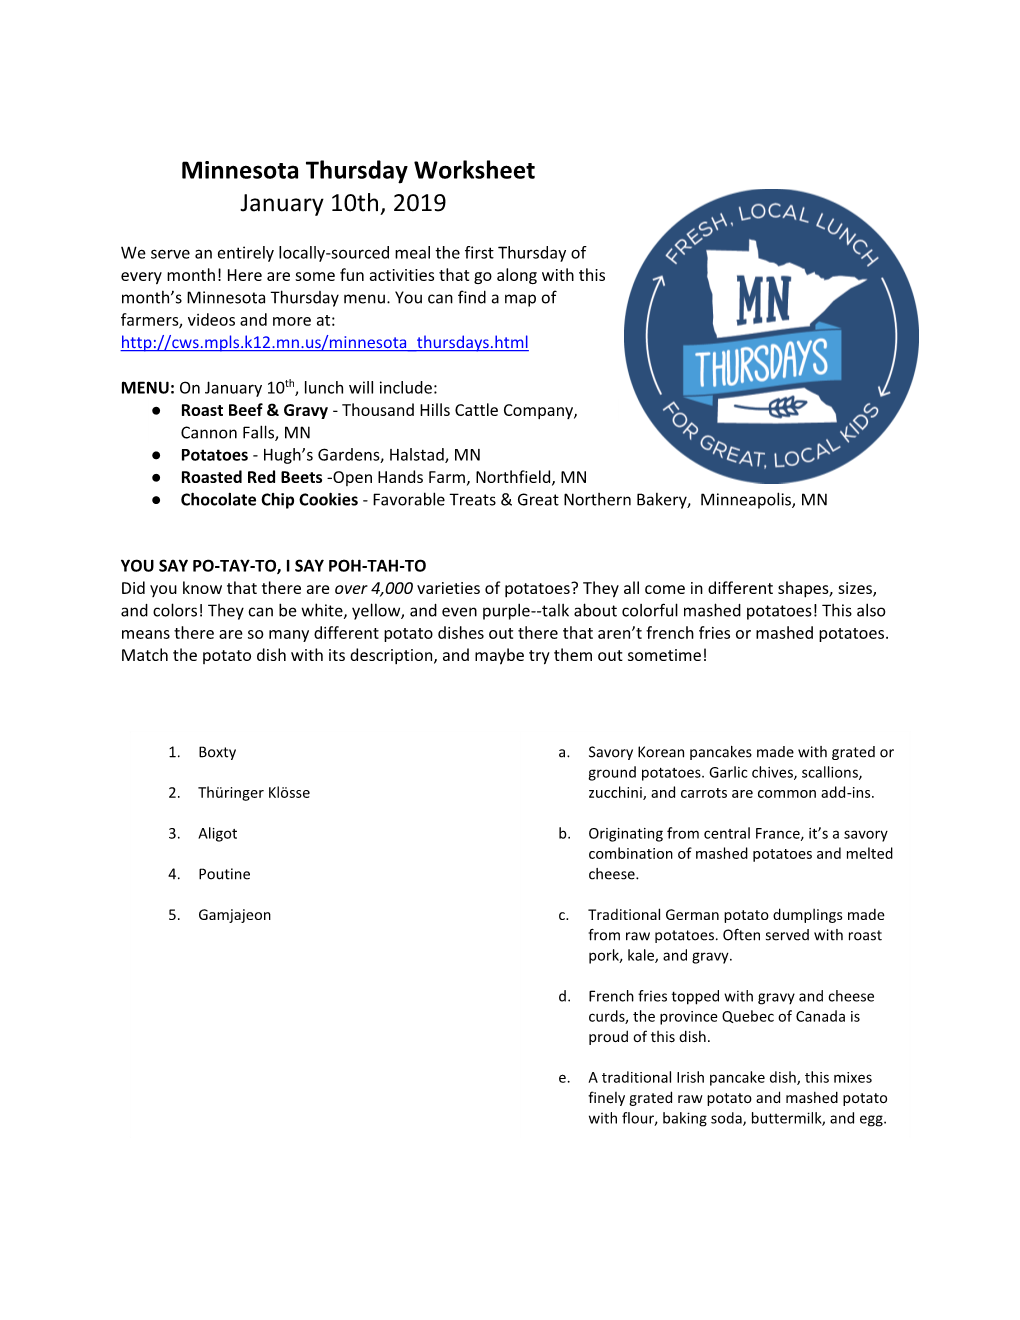 Minnesota Thursday Worksheet January 10Th, 2019